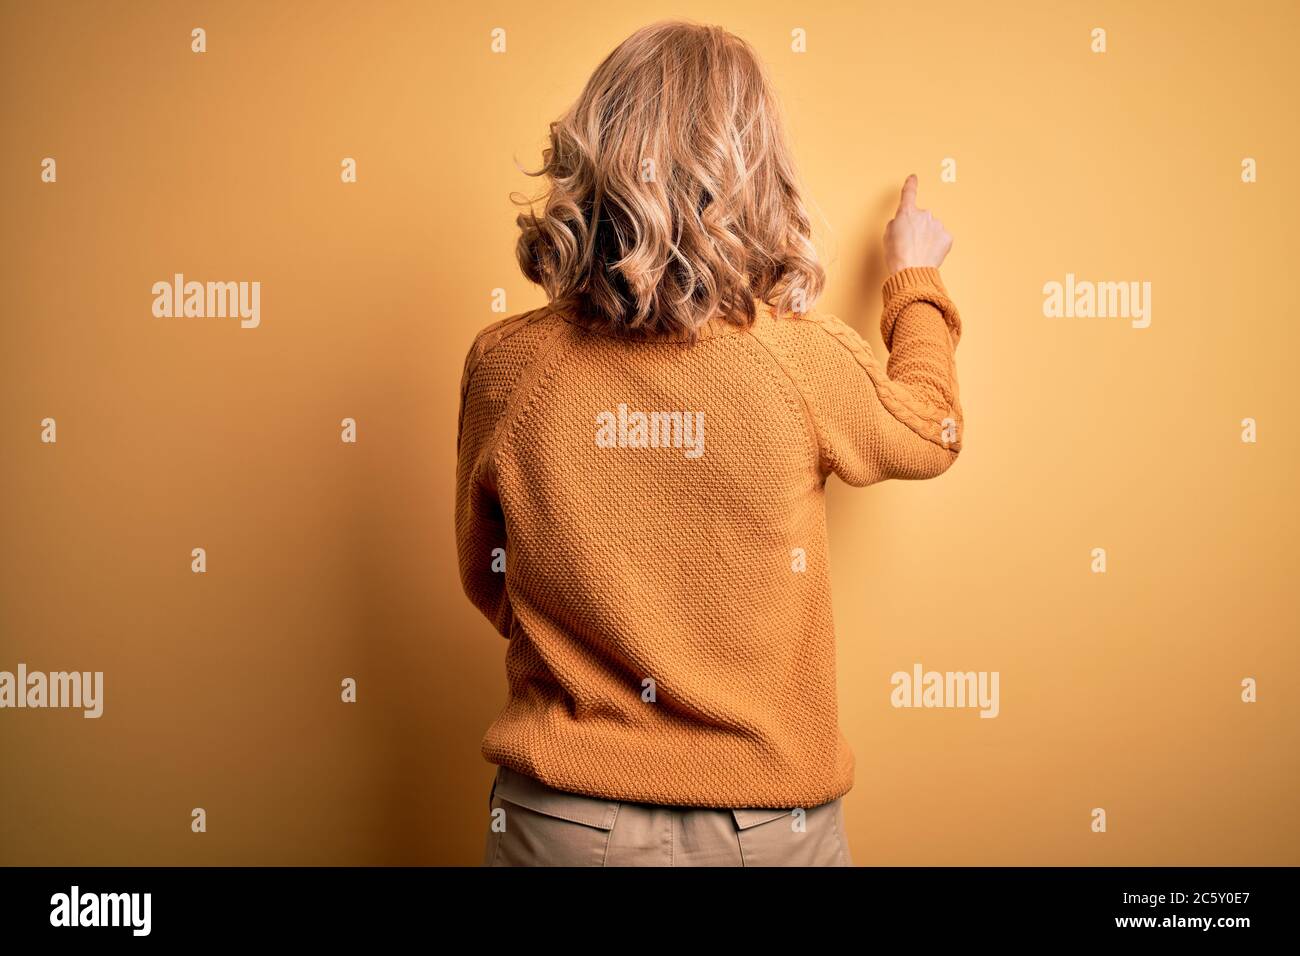 Mittelalter schöne blonde Frau trägt lässige Pullover und Brille über  gelben Hintergrund posiert rückwärts zeigt nach vorne mit der Fingerhand  Stockfotografie - Alamy